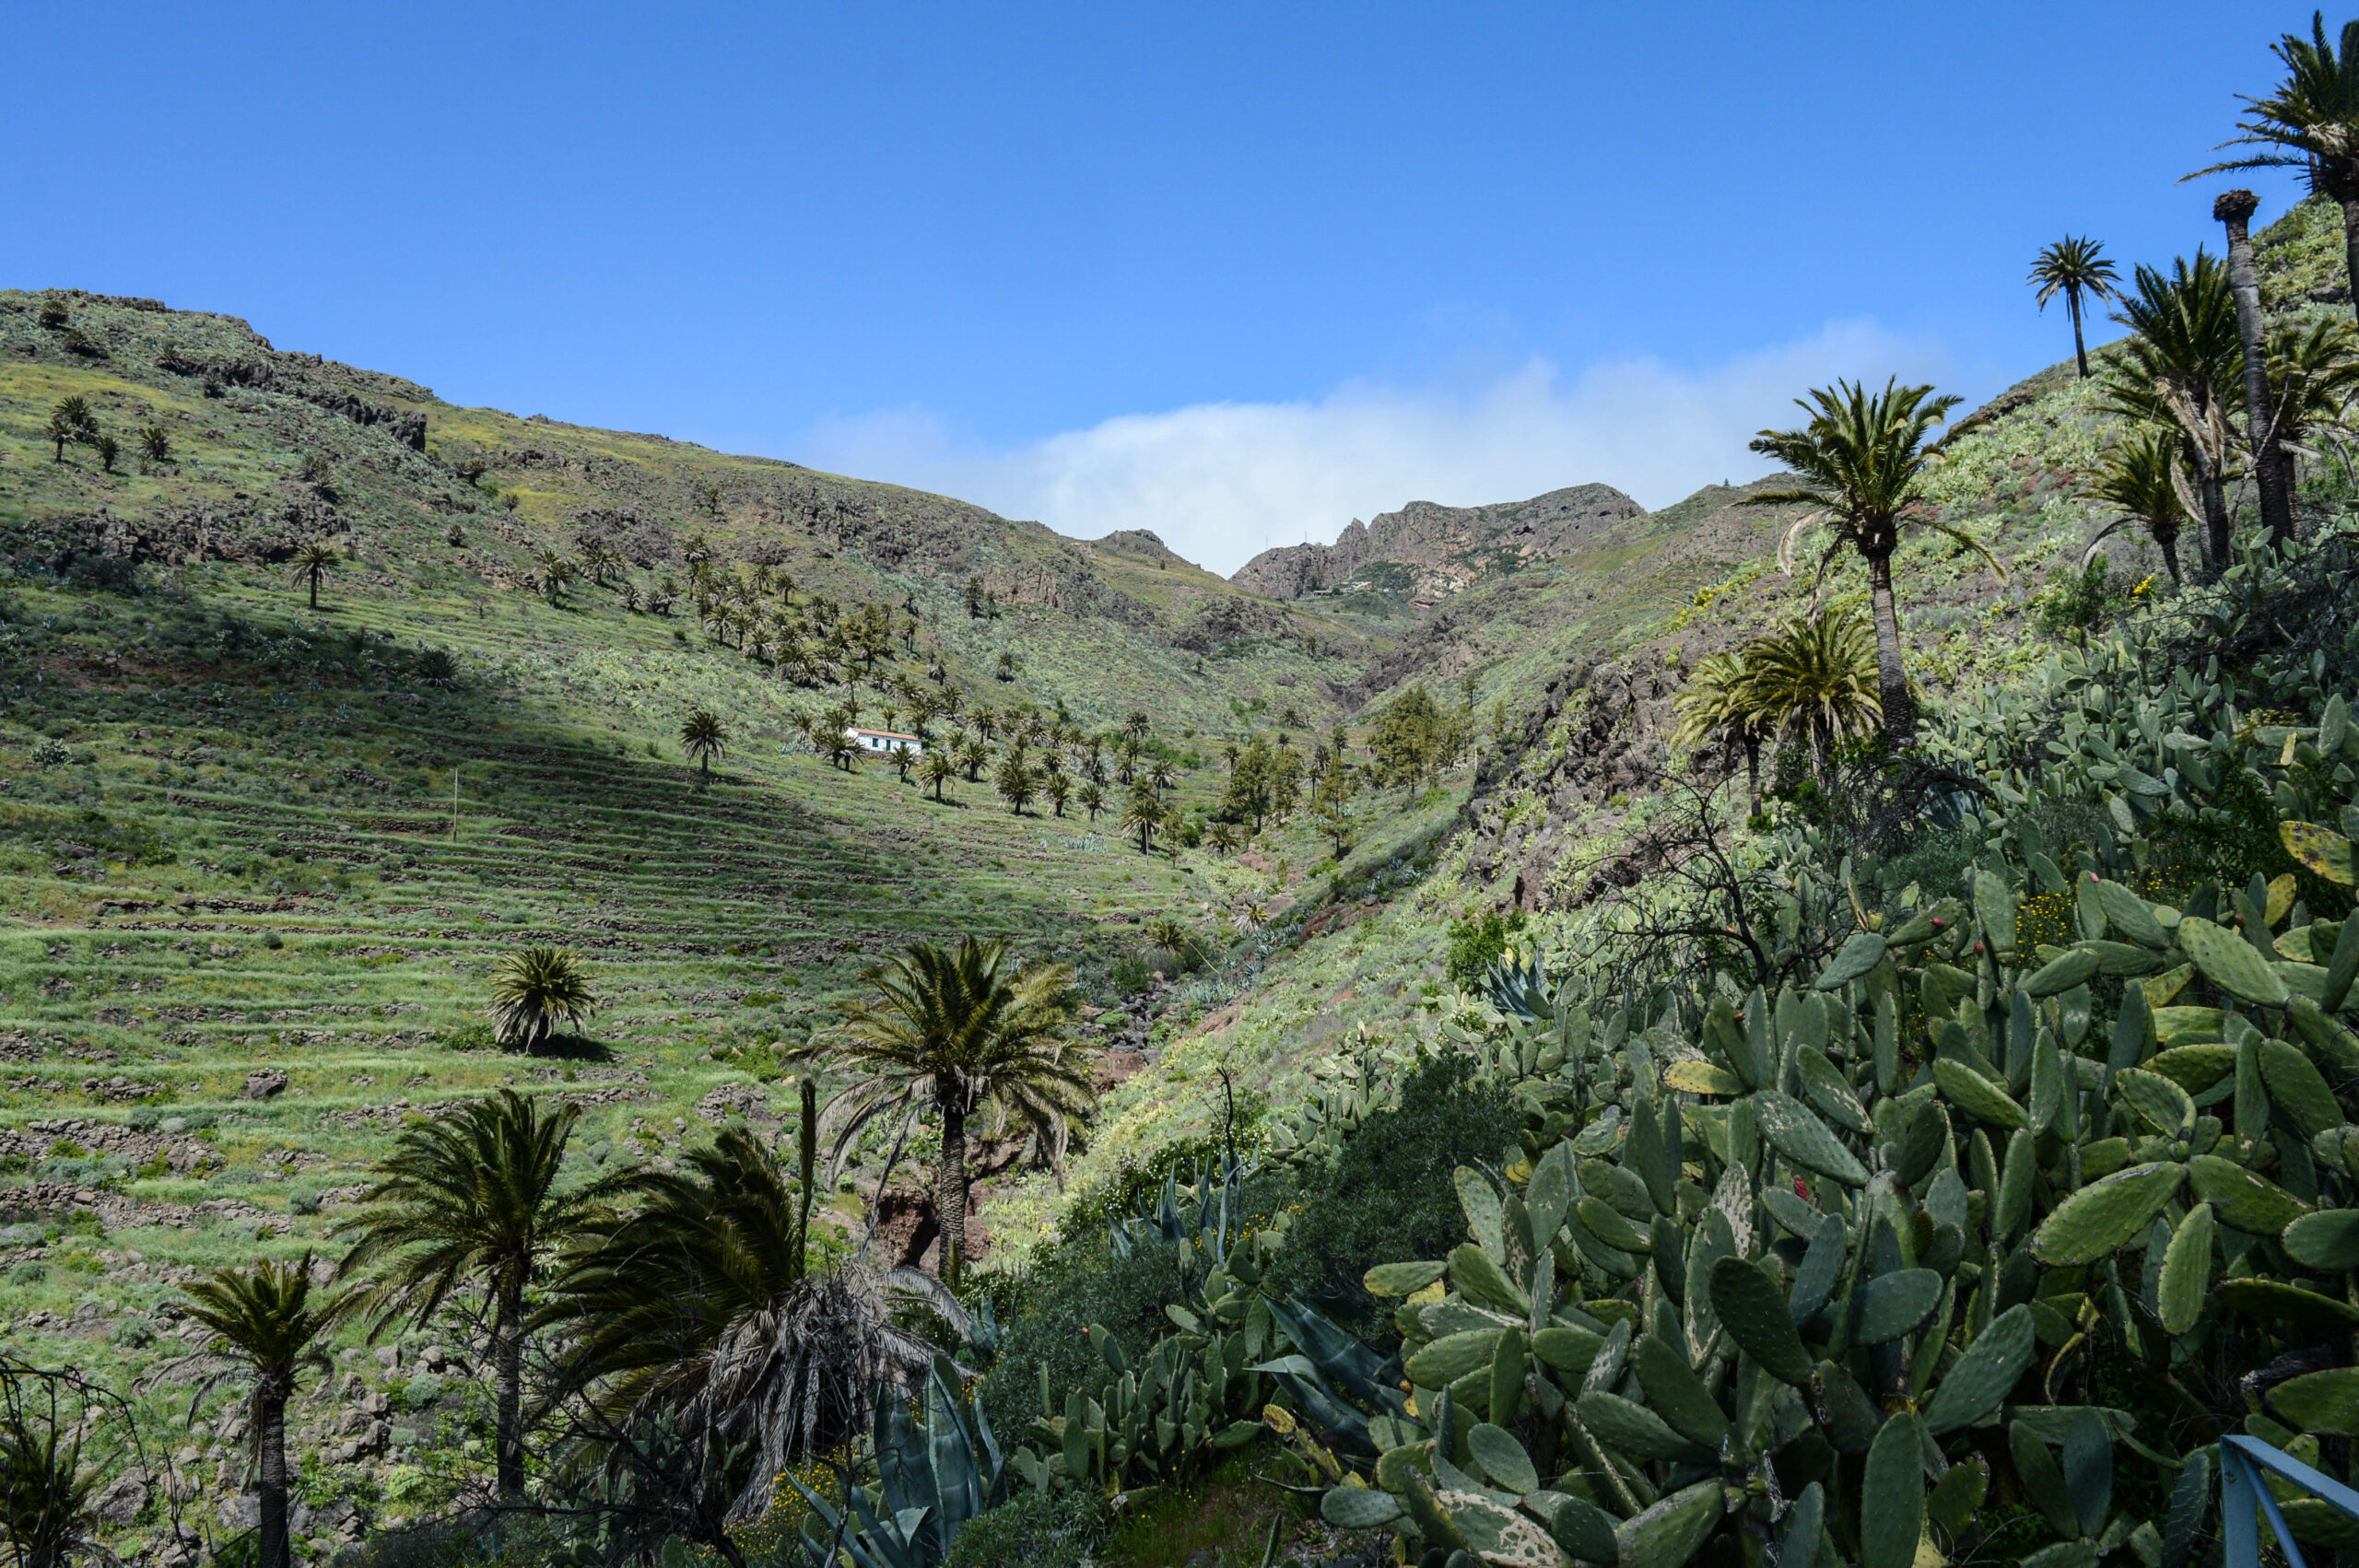 Vallée escarpée dans lequel se trouve le dragonnier, avec des cactus, palmiers, d'anciennes terrasses au loin, et une petite maison perdue au milieu